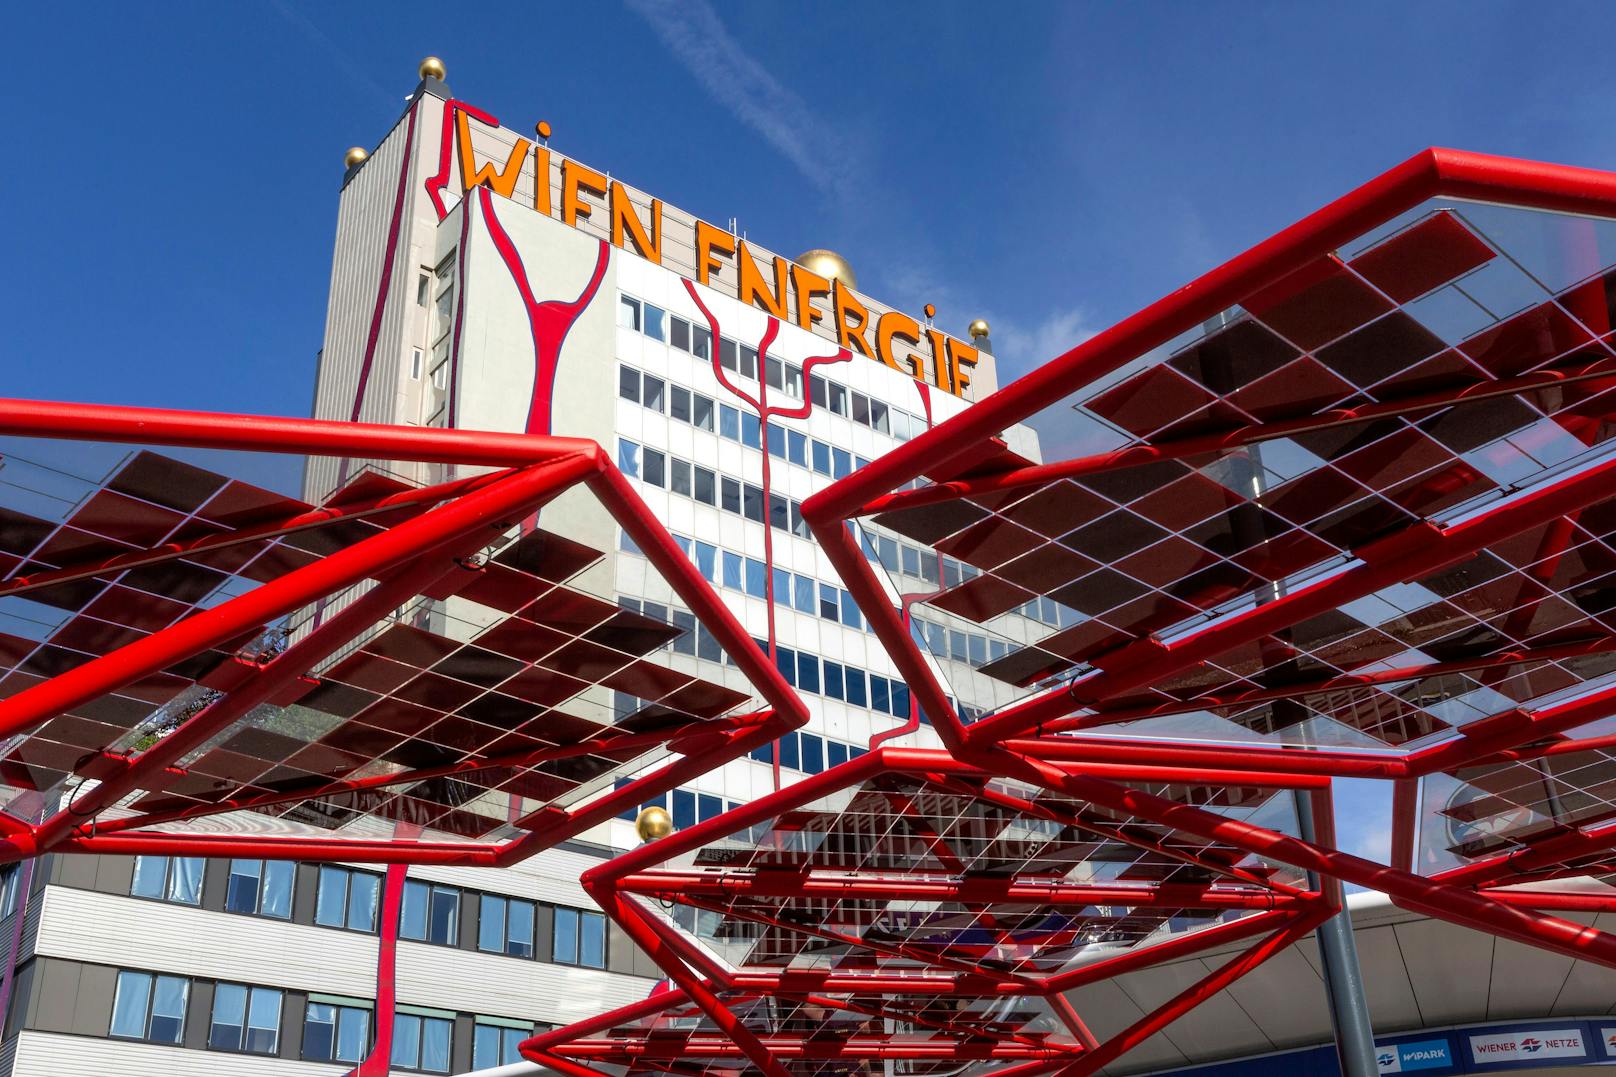 Wien Energie senkt die Preise – aber du musst etwas tun